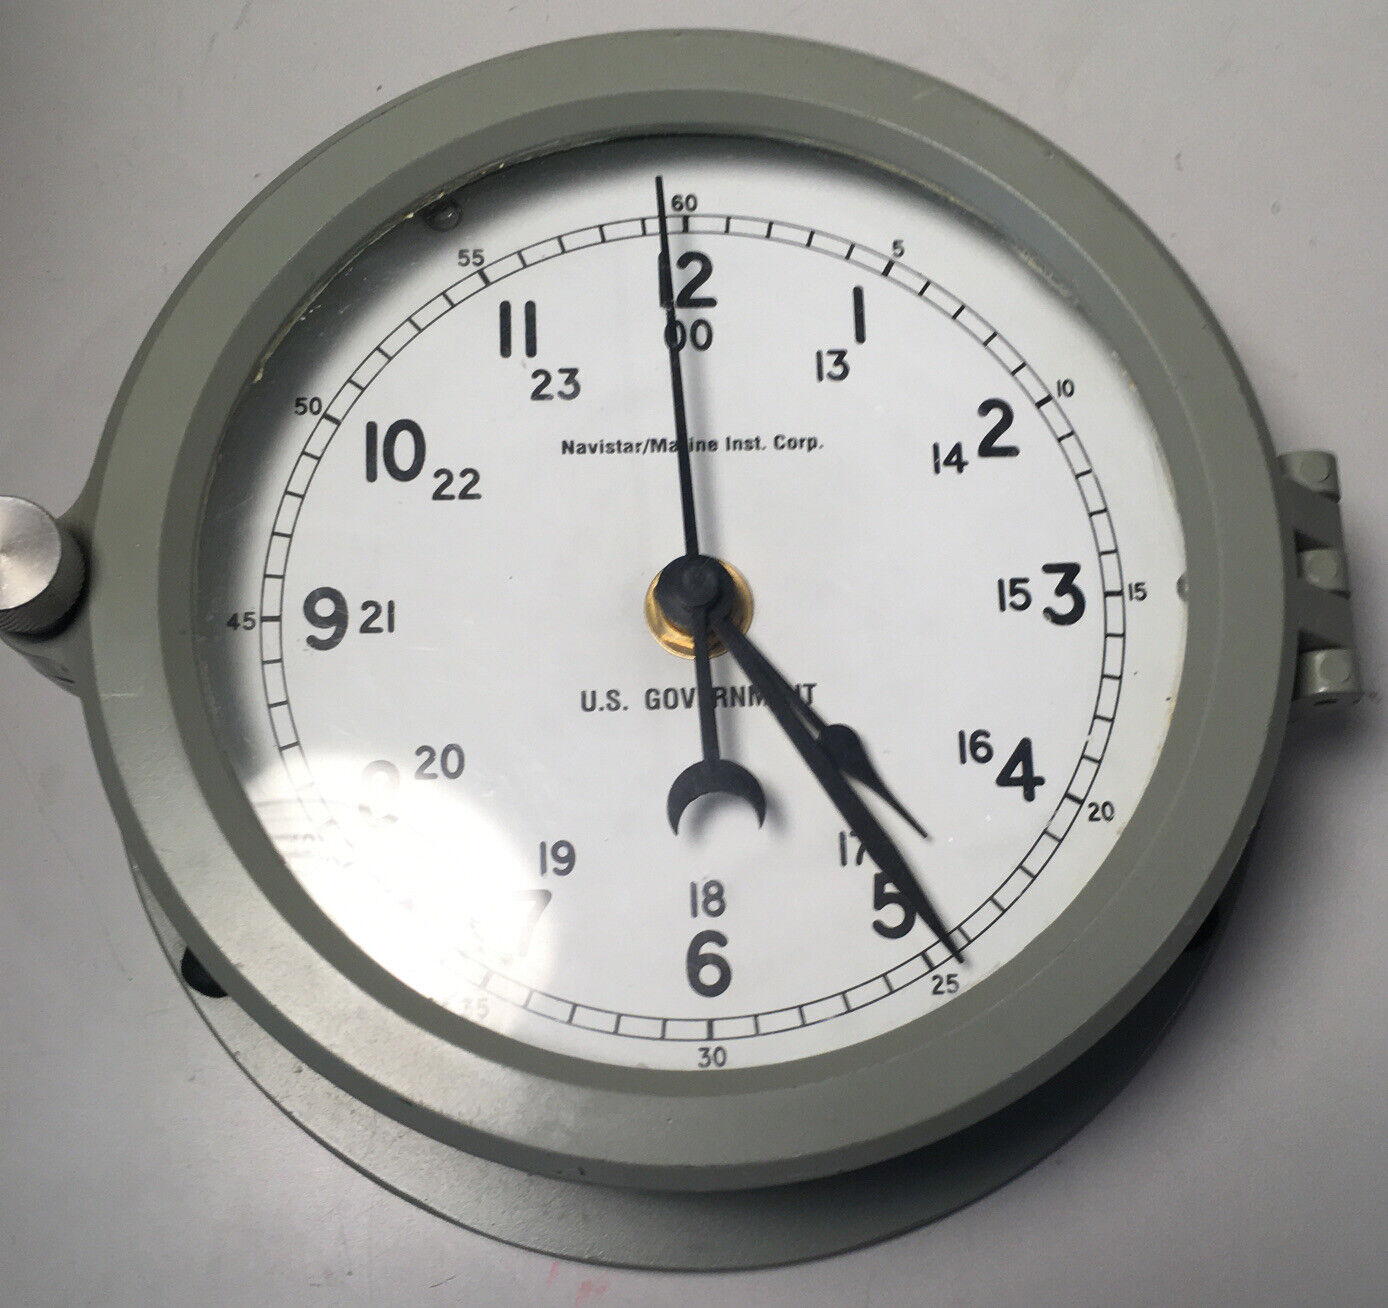 Navistar Marine instrument corporation U.S. navy clock.